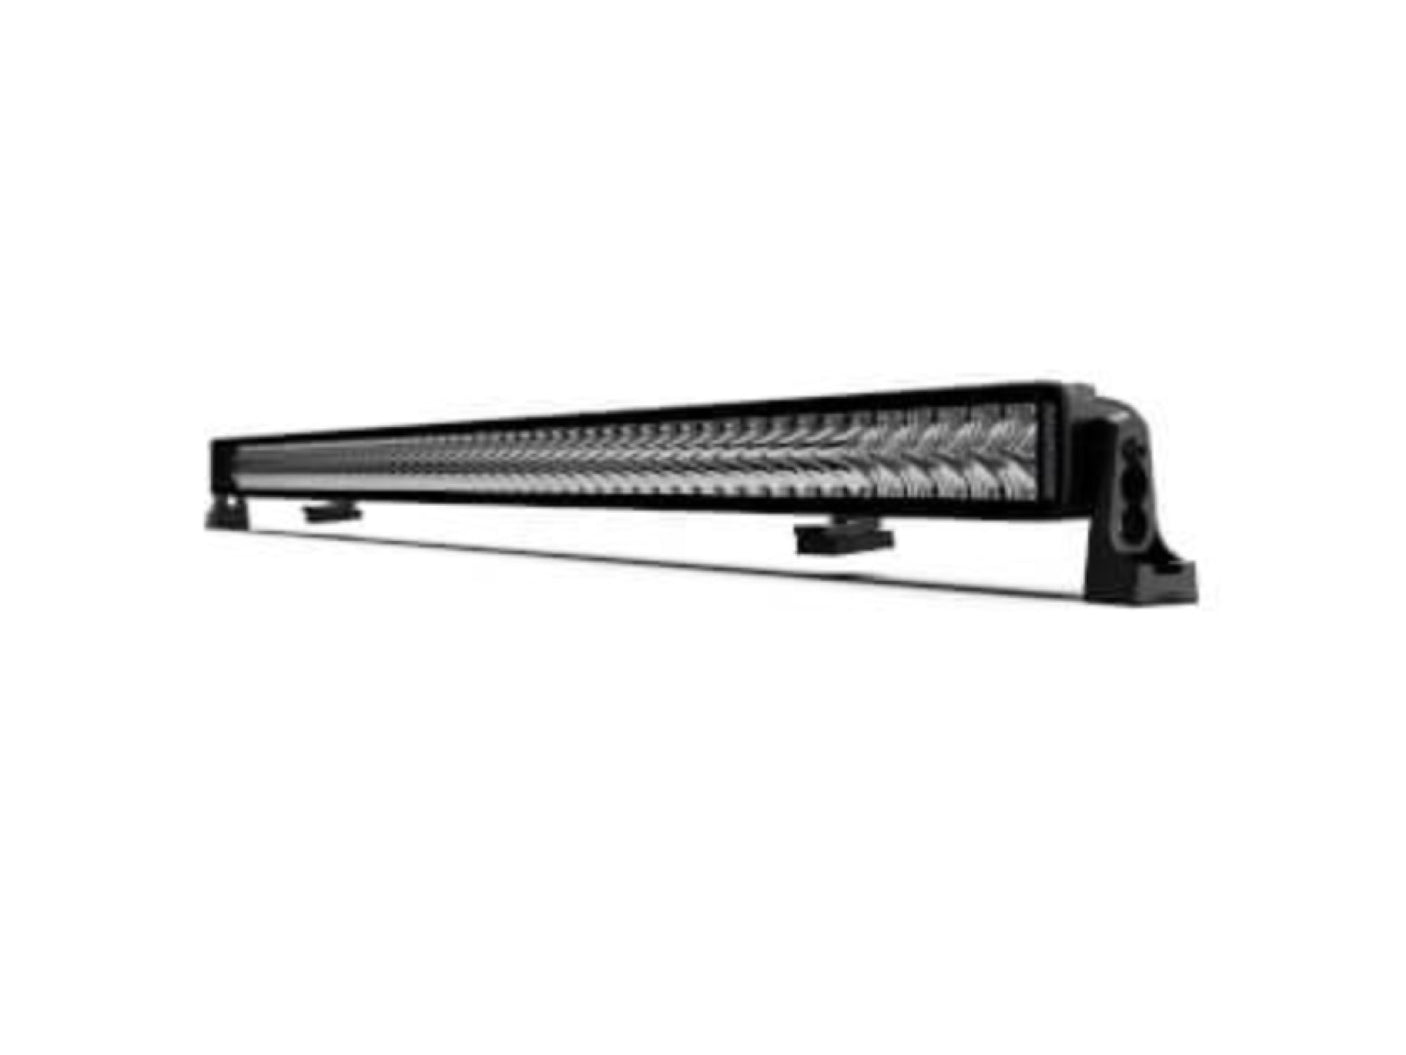 Roadvision Stealth S70 52" LED Light Bar